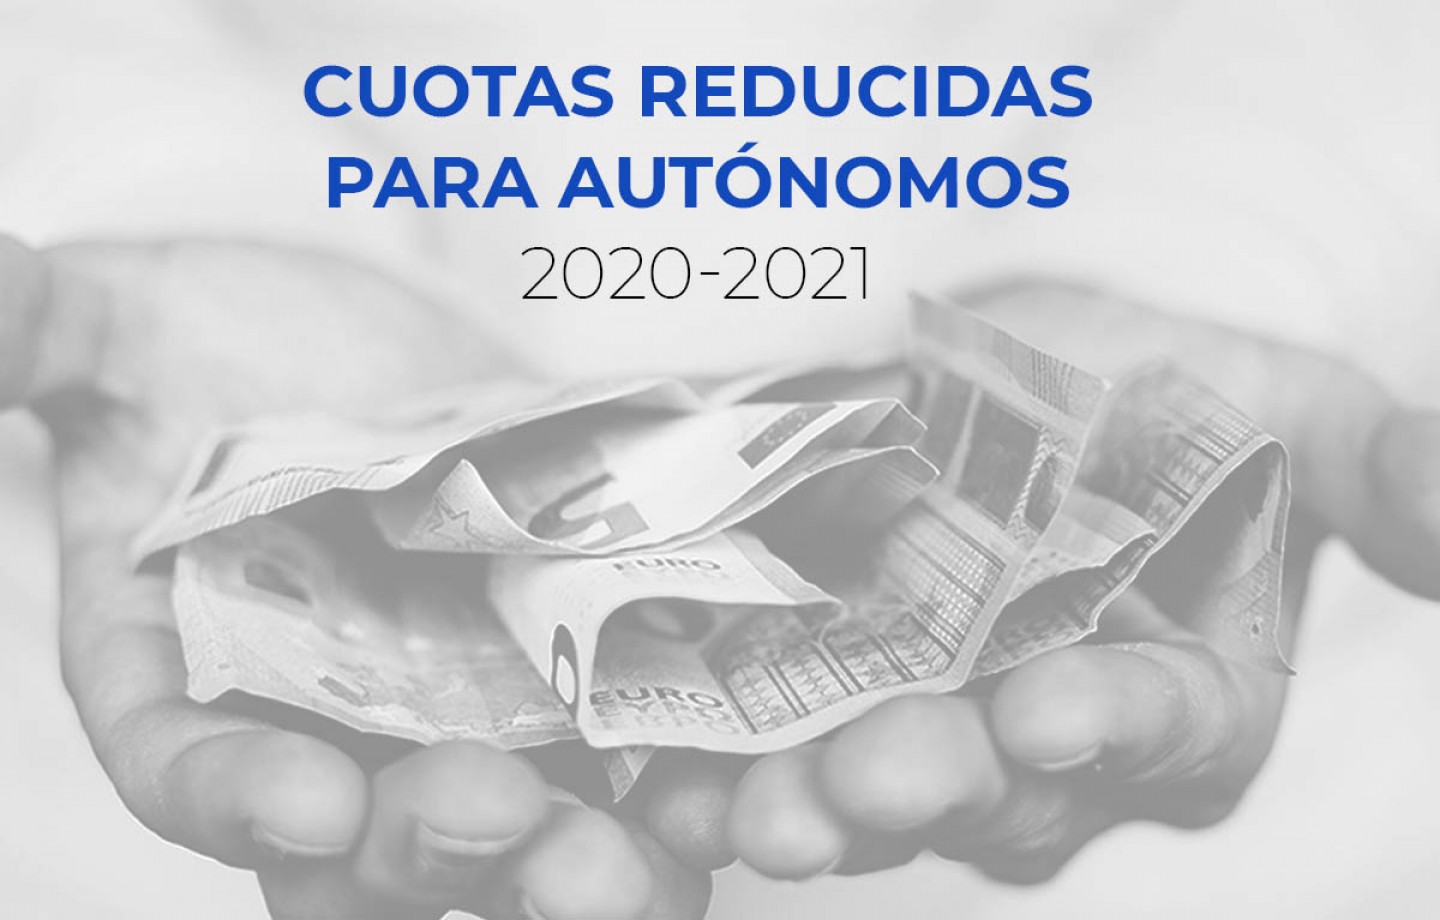 cuota-reducidas-autonomos-2020-2021-1